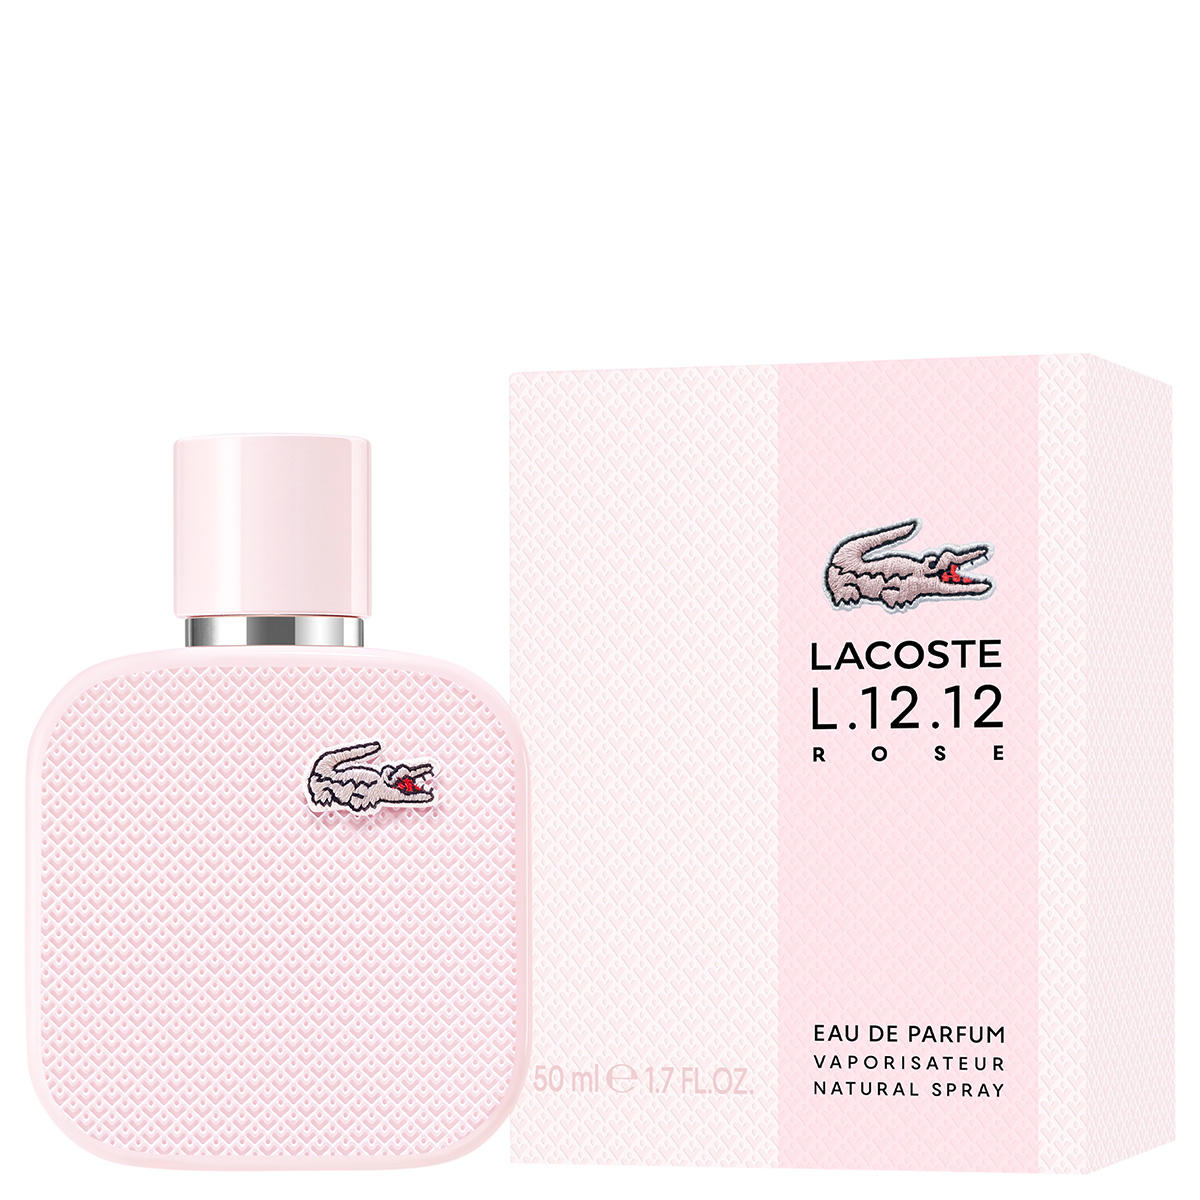 Lacoste L.12.12 Rose Eau de Parfum 50 ml - 2